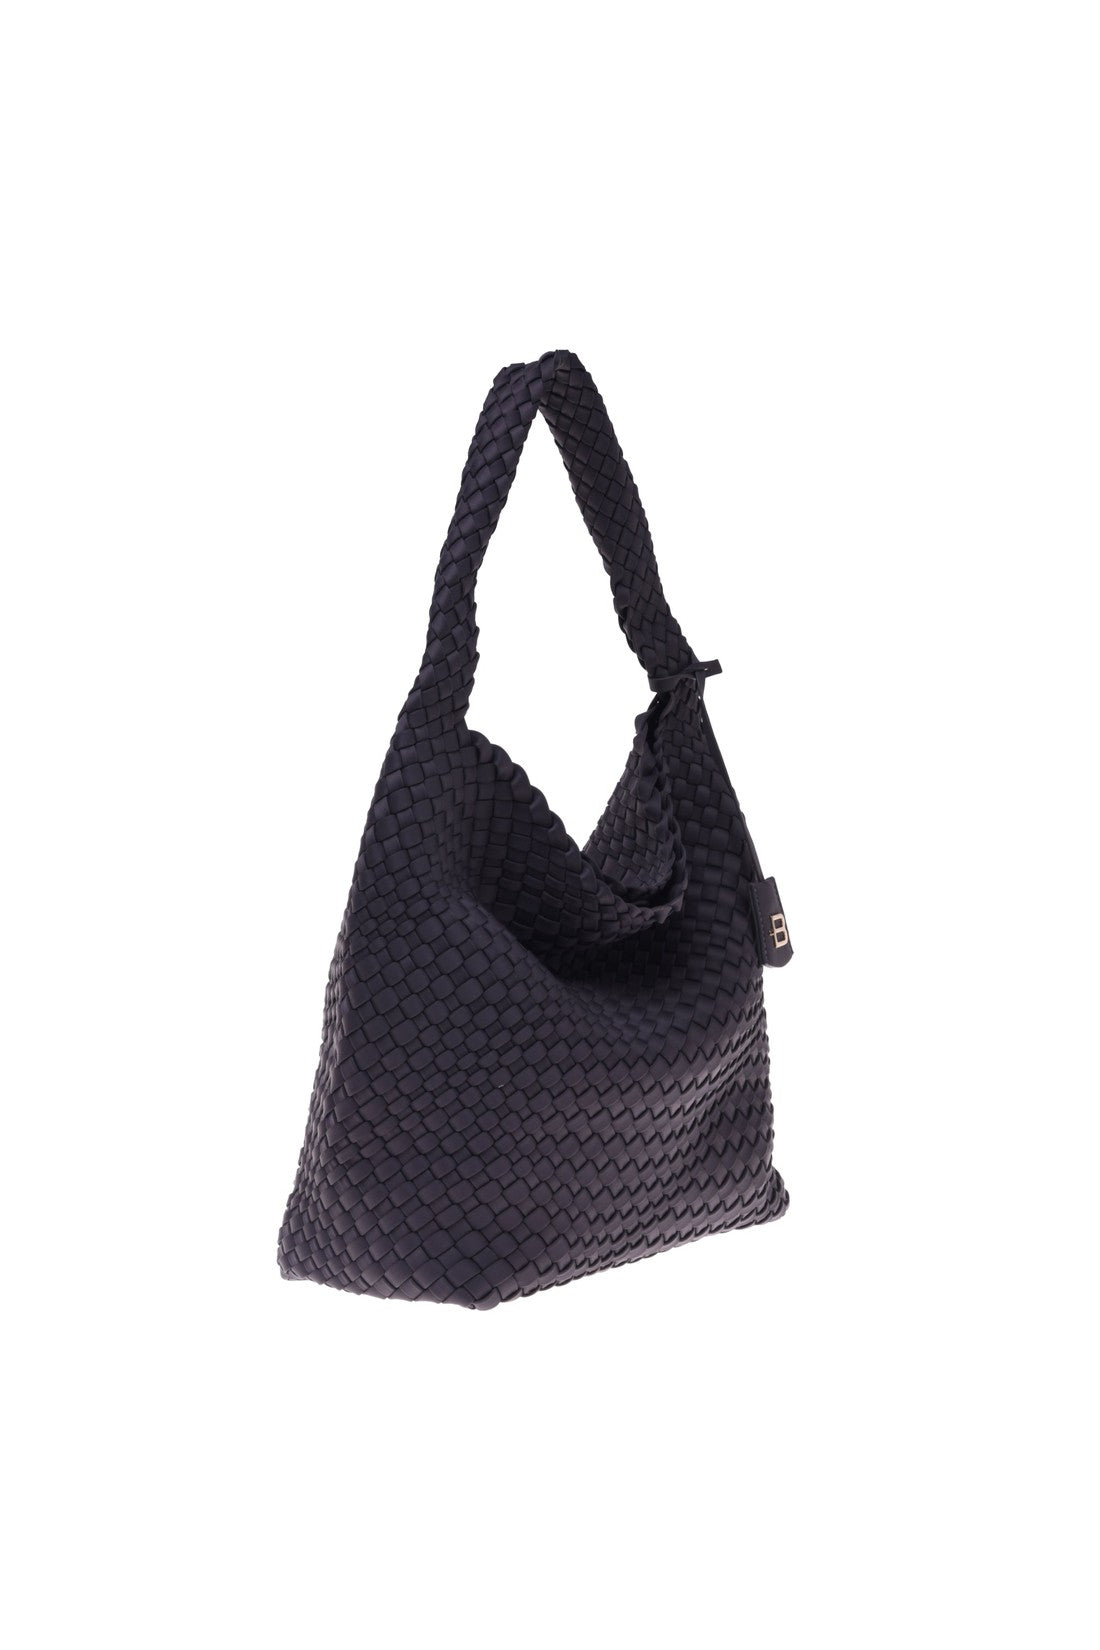 Shoulder bag in dark grey nylon